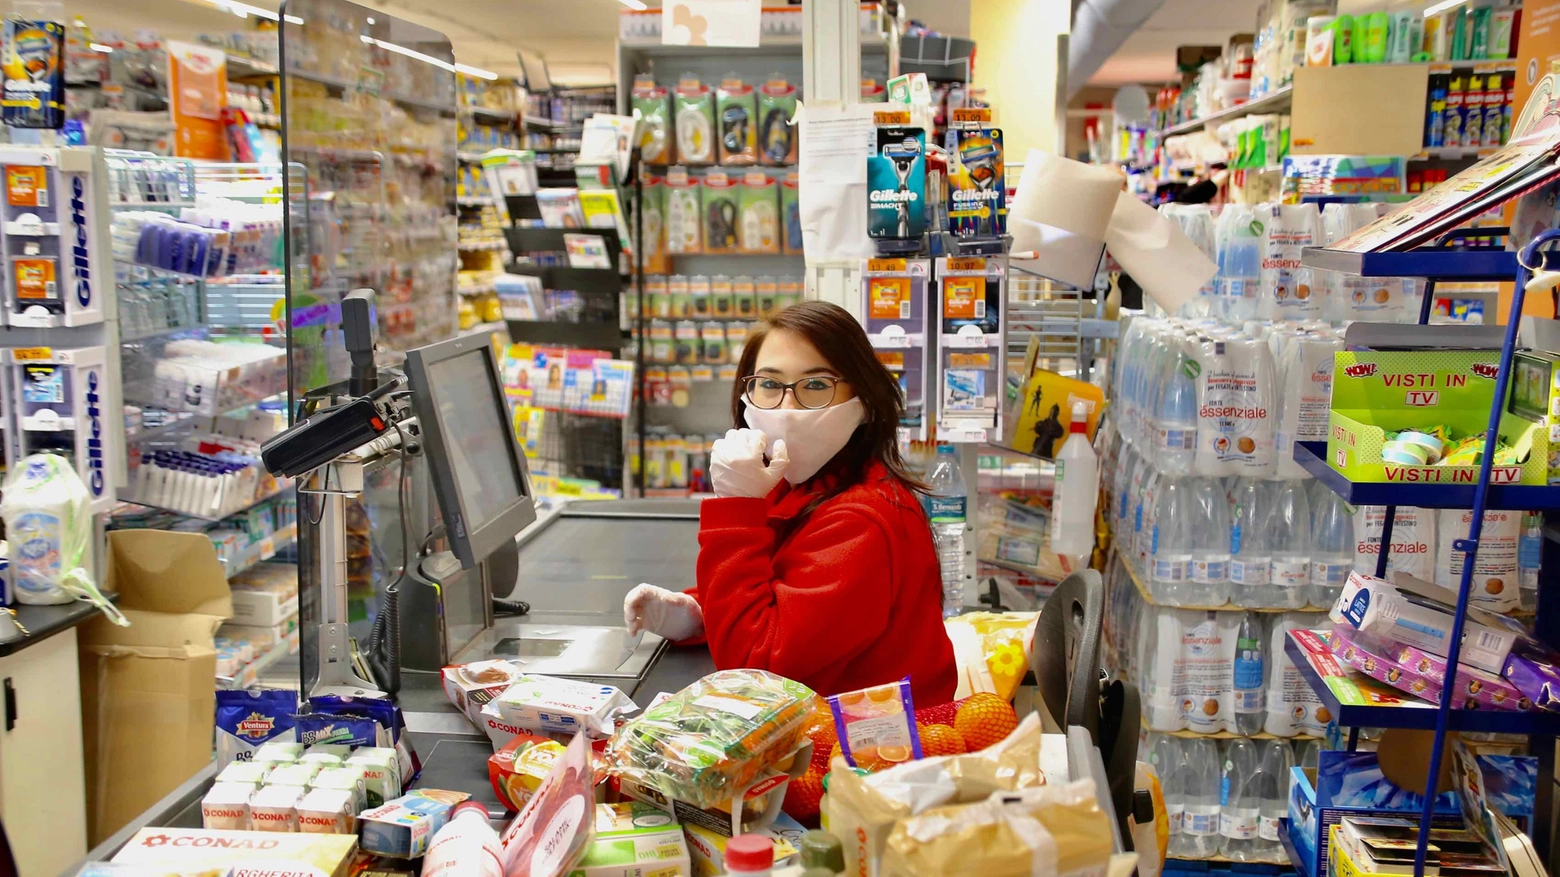 Mascherine nei supermercati Coop (Pressphoto)